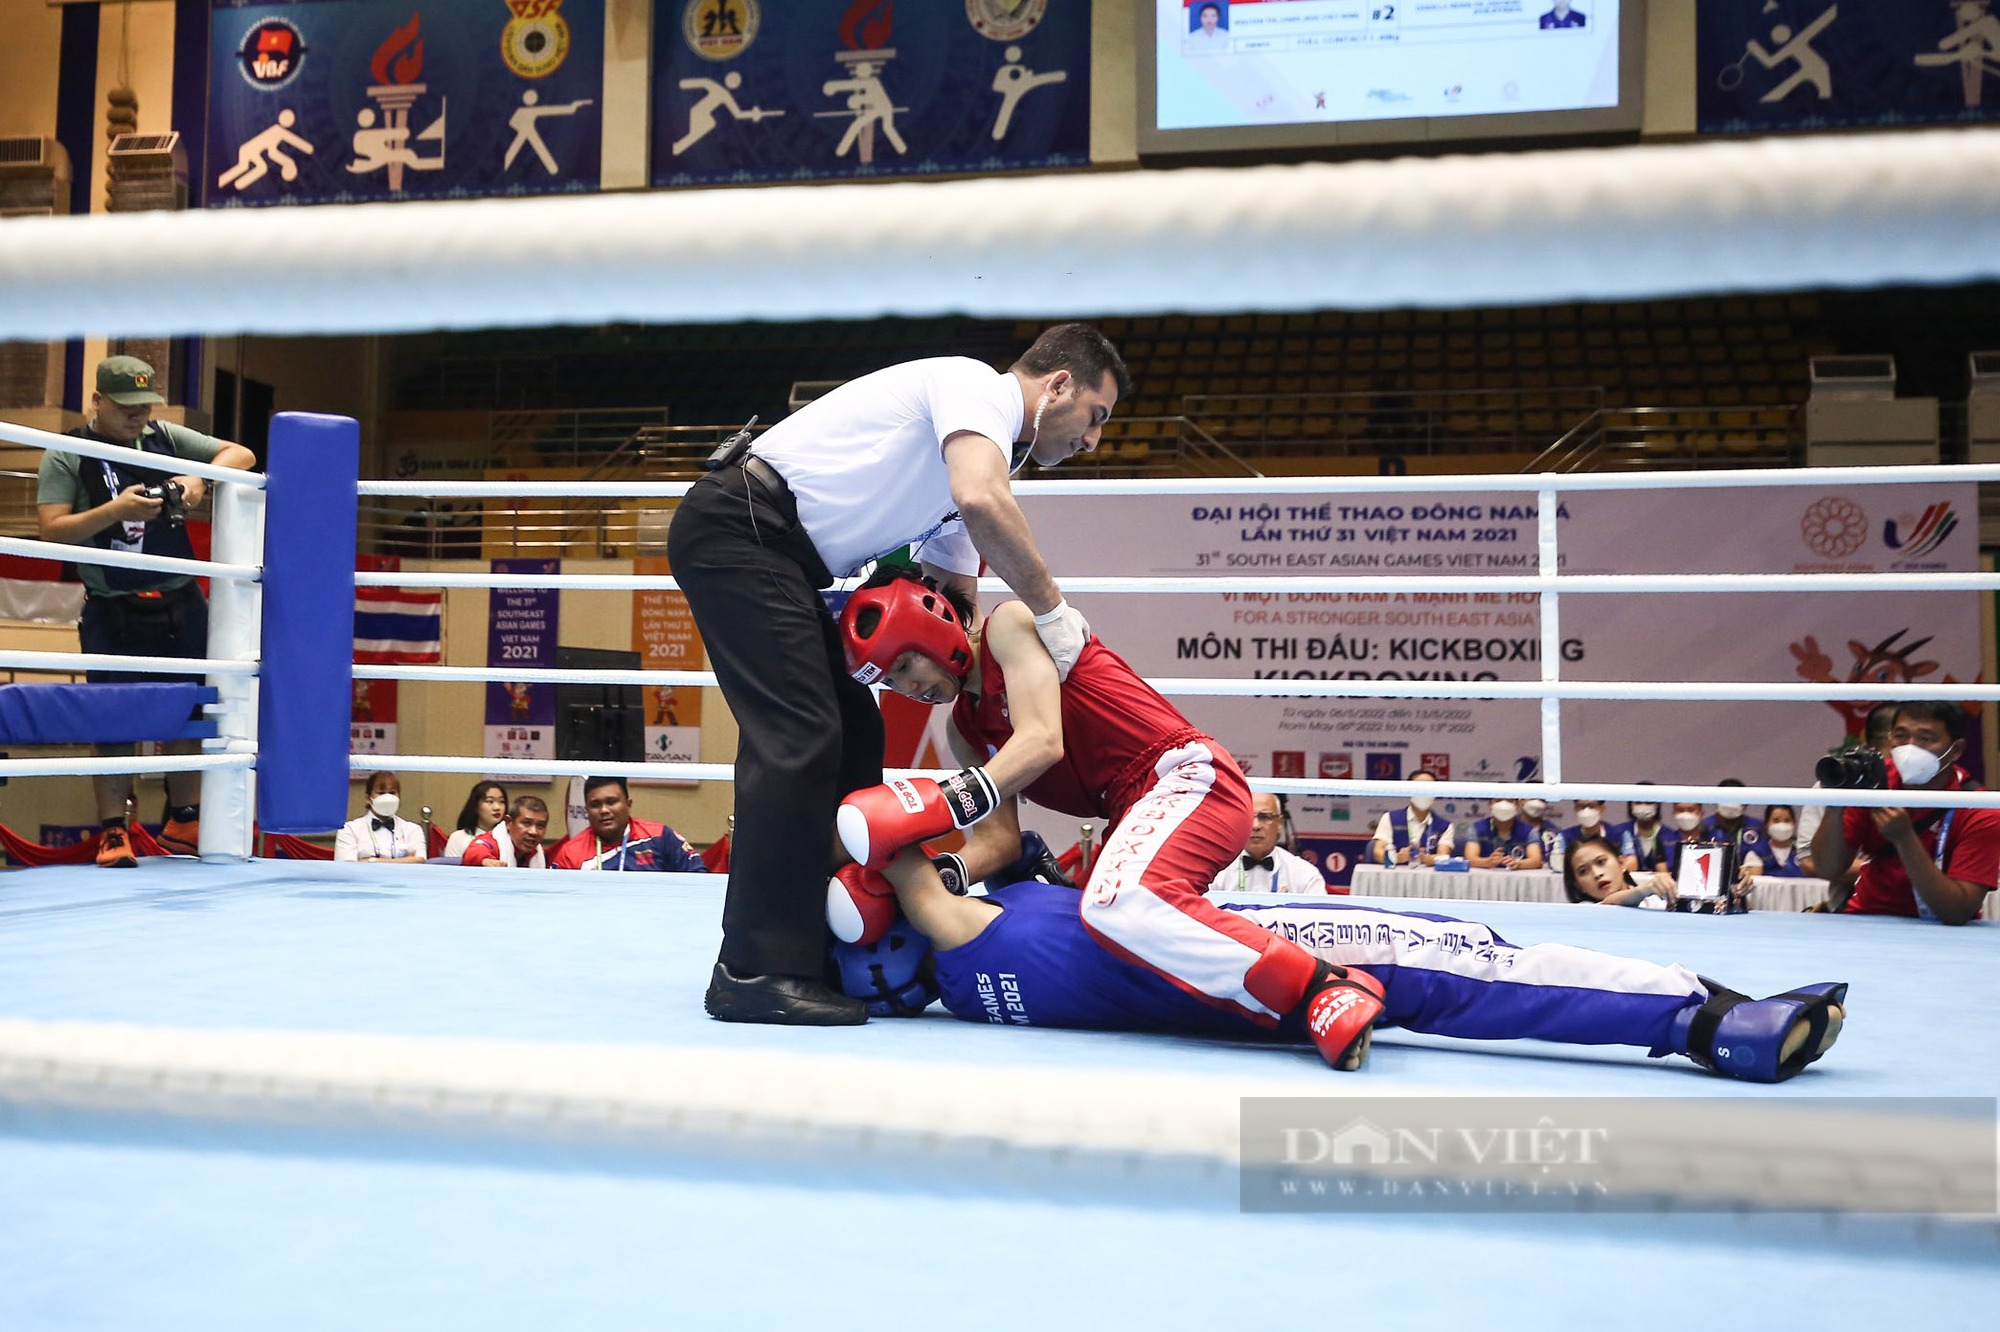 VĐV Kickboxing Hằng Nga xúc động giành chiến thắng cho người mẹ ở quê nhà - Ảnh 3.